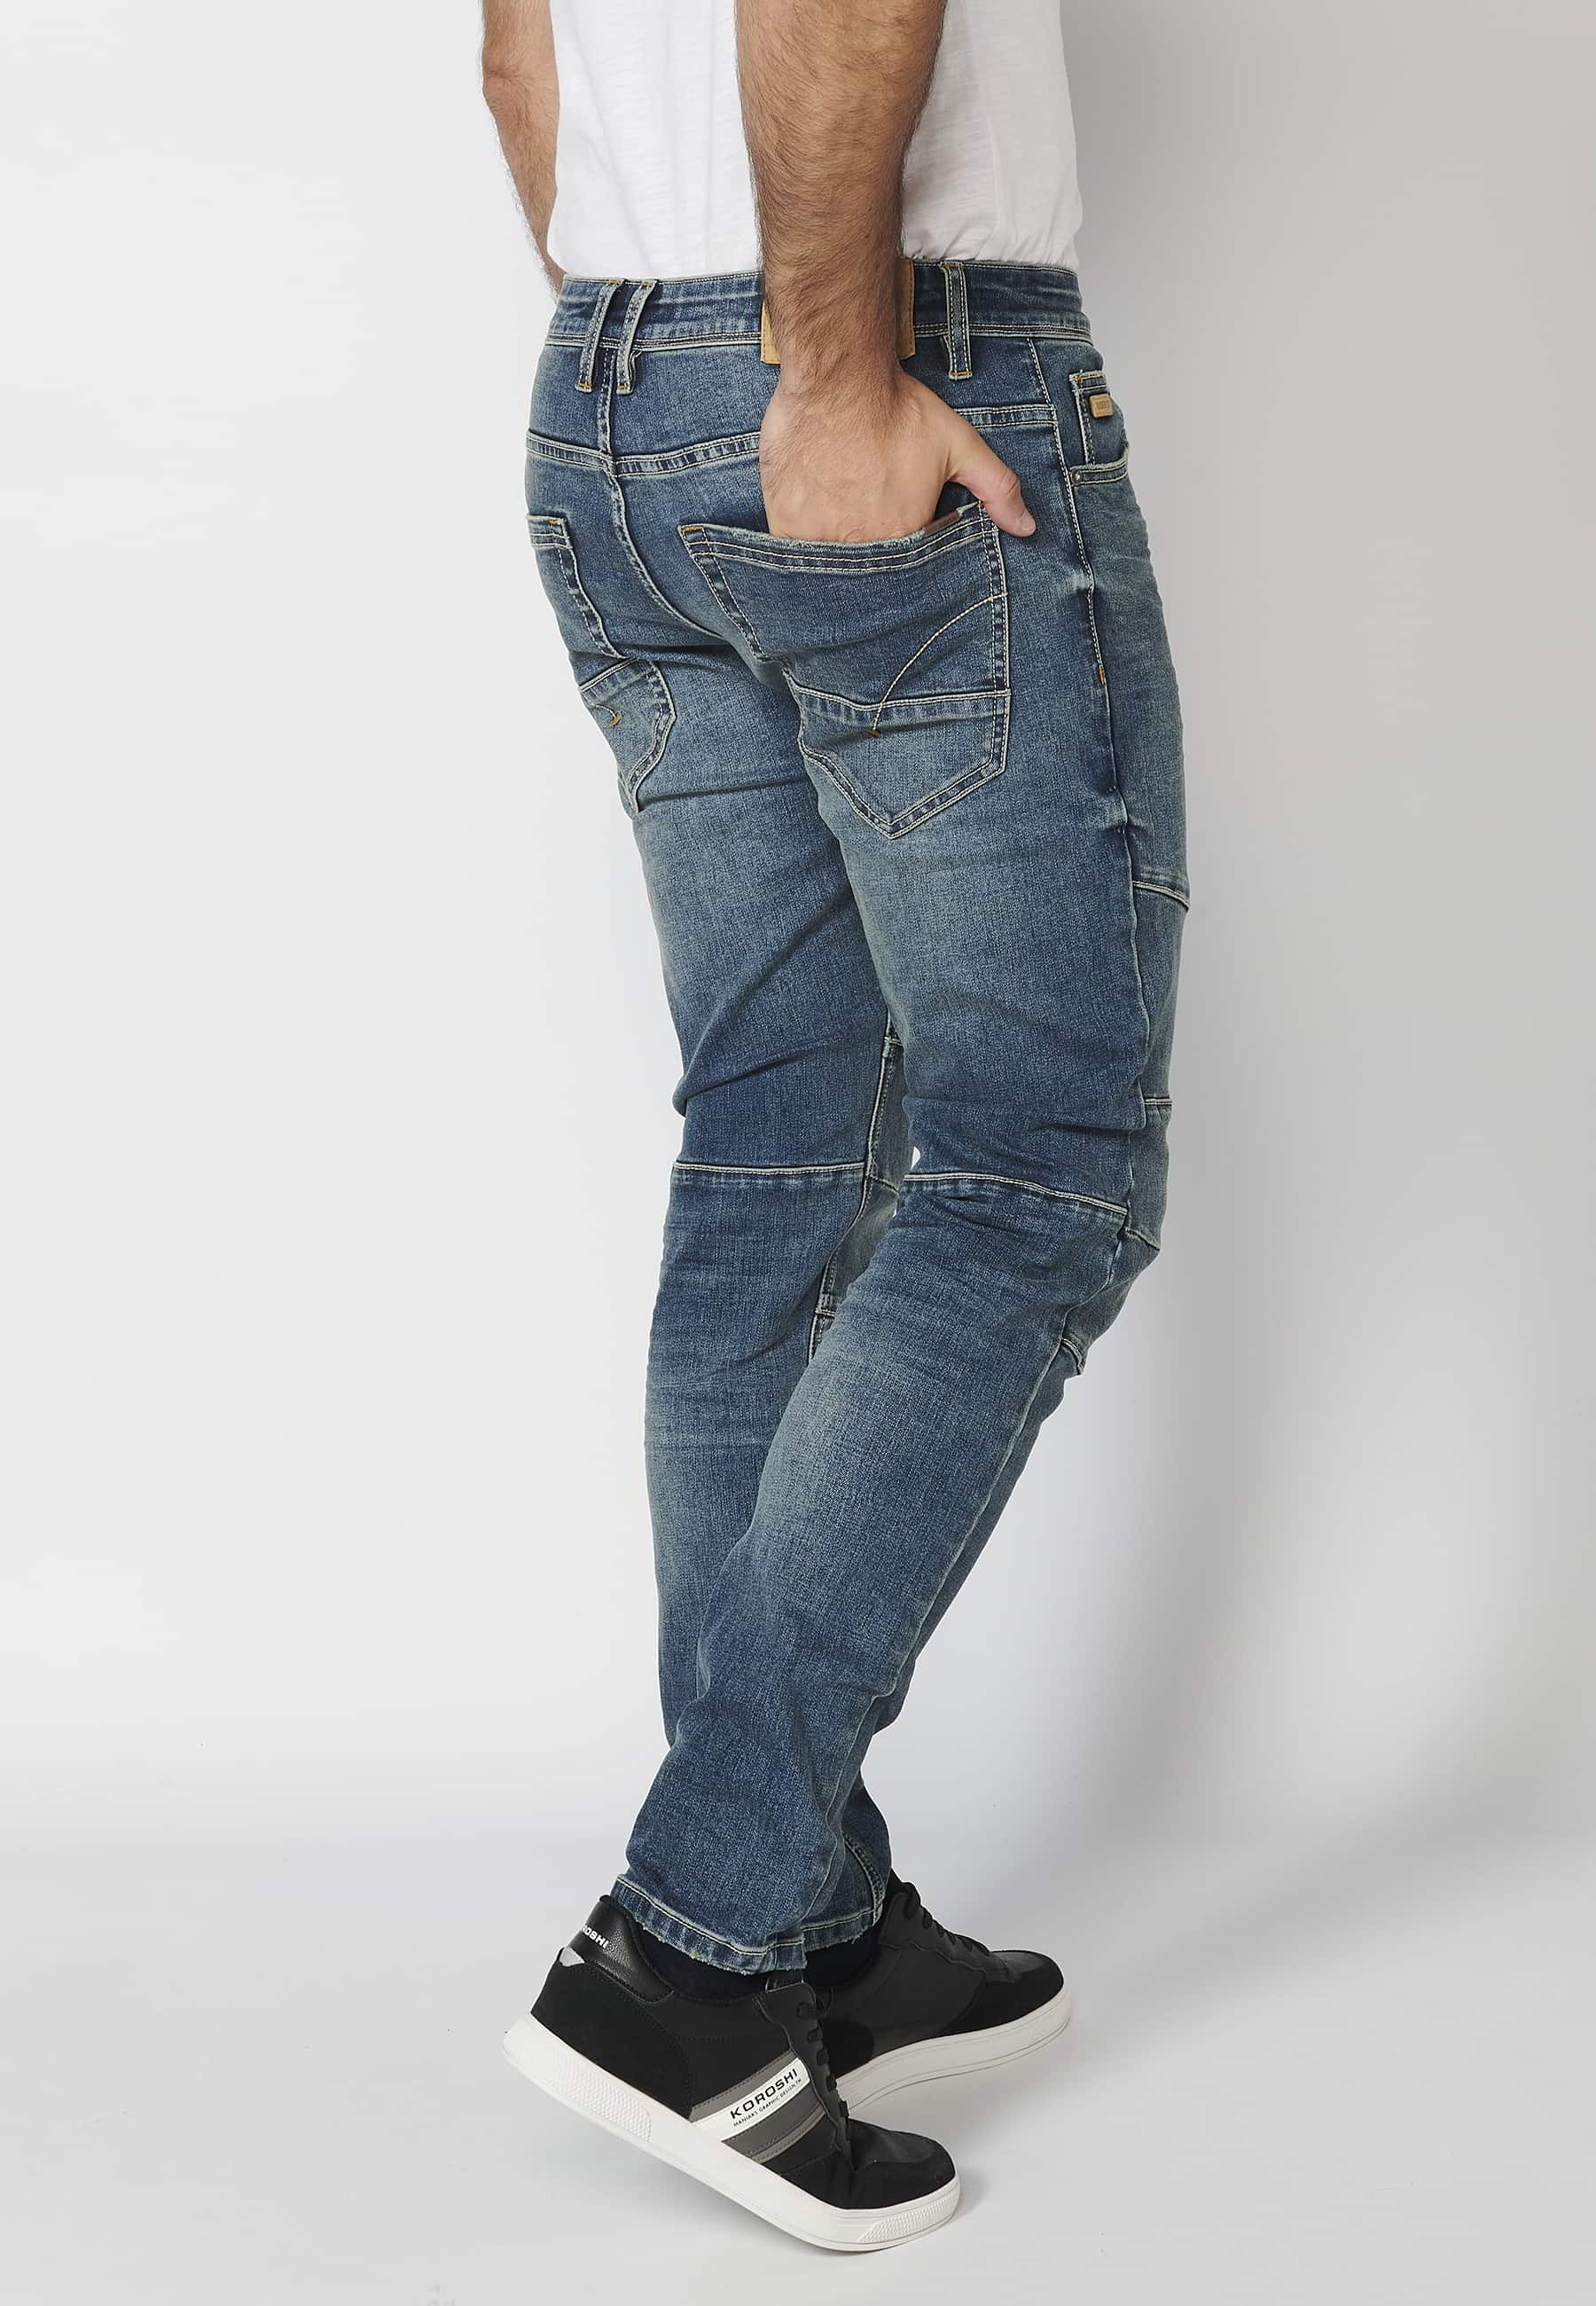 Pantalón largo jeans biker skinny fit con detalles en rodillas cinco bolsillos color Azul para Hombre 5